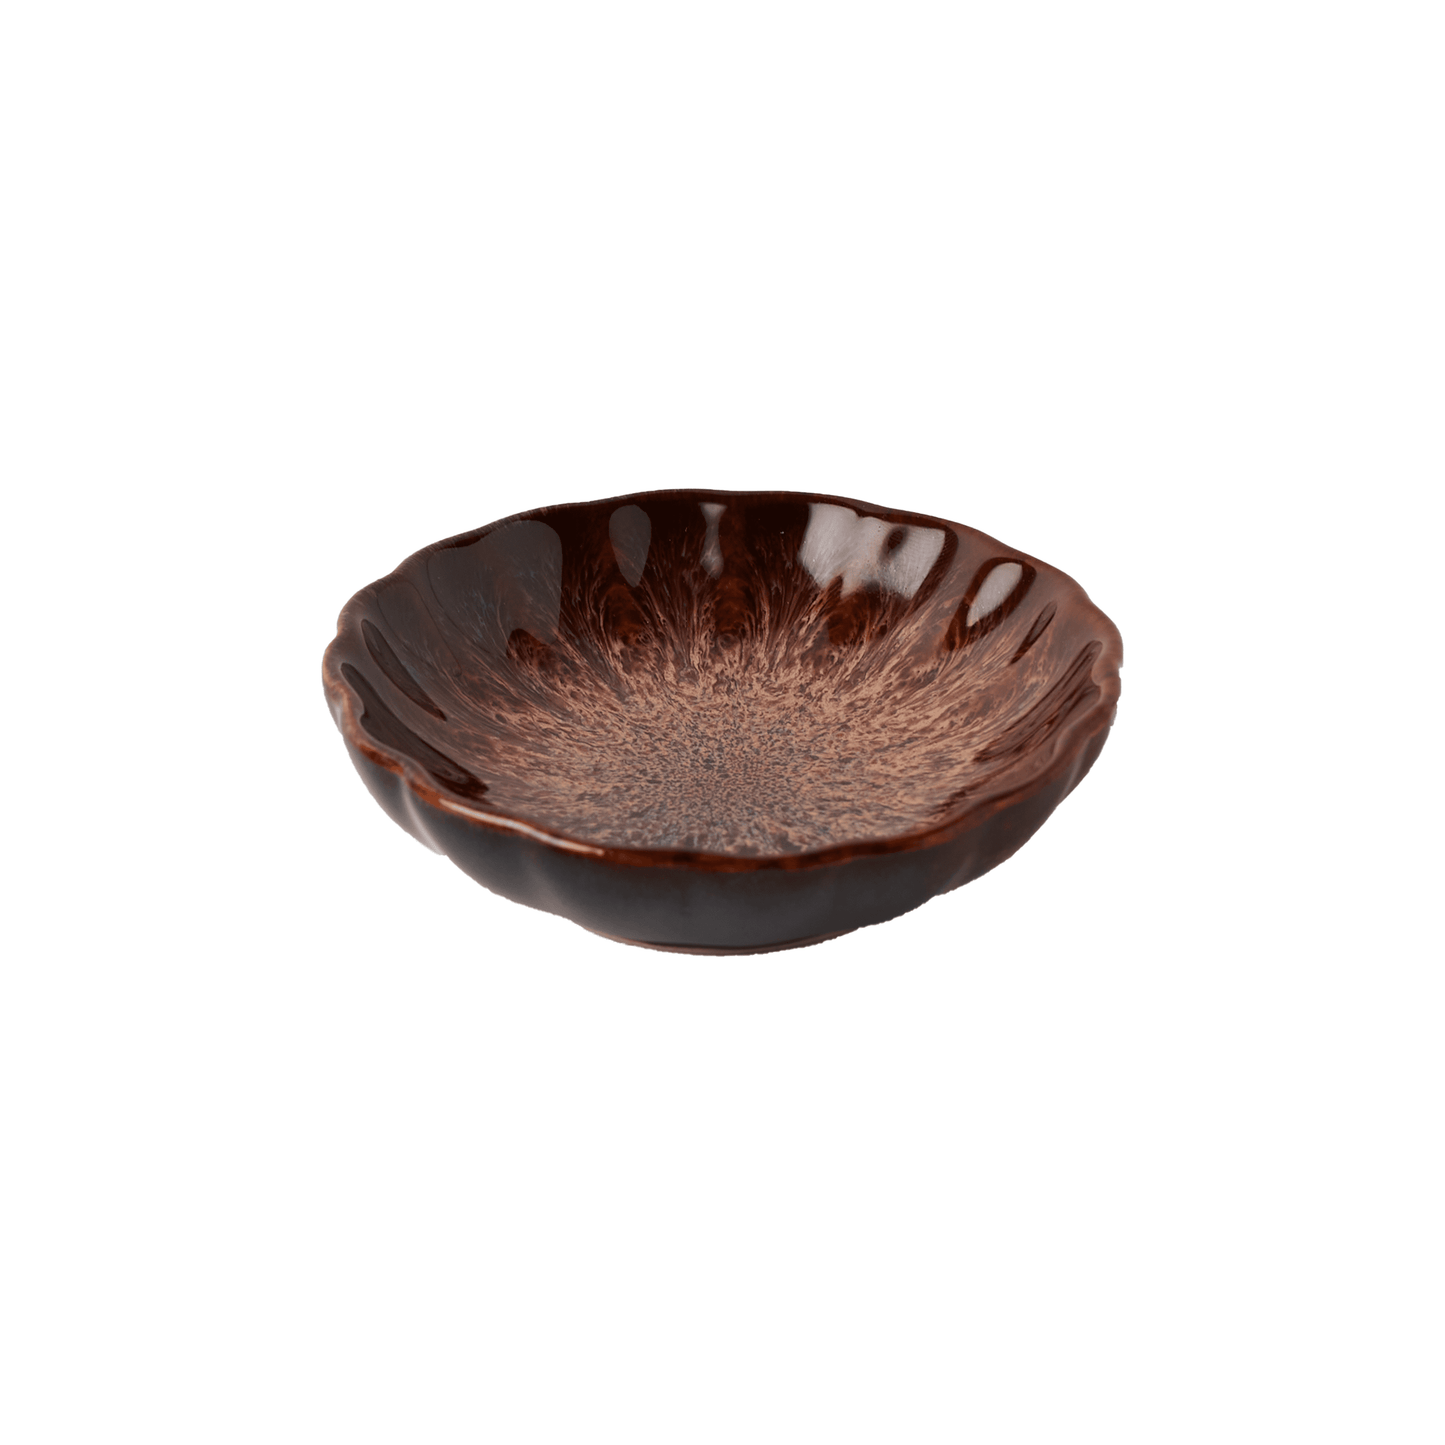 Ceramic Trinket Dish in Brinjal